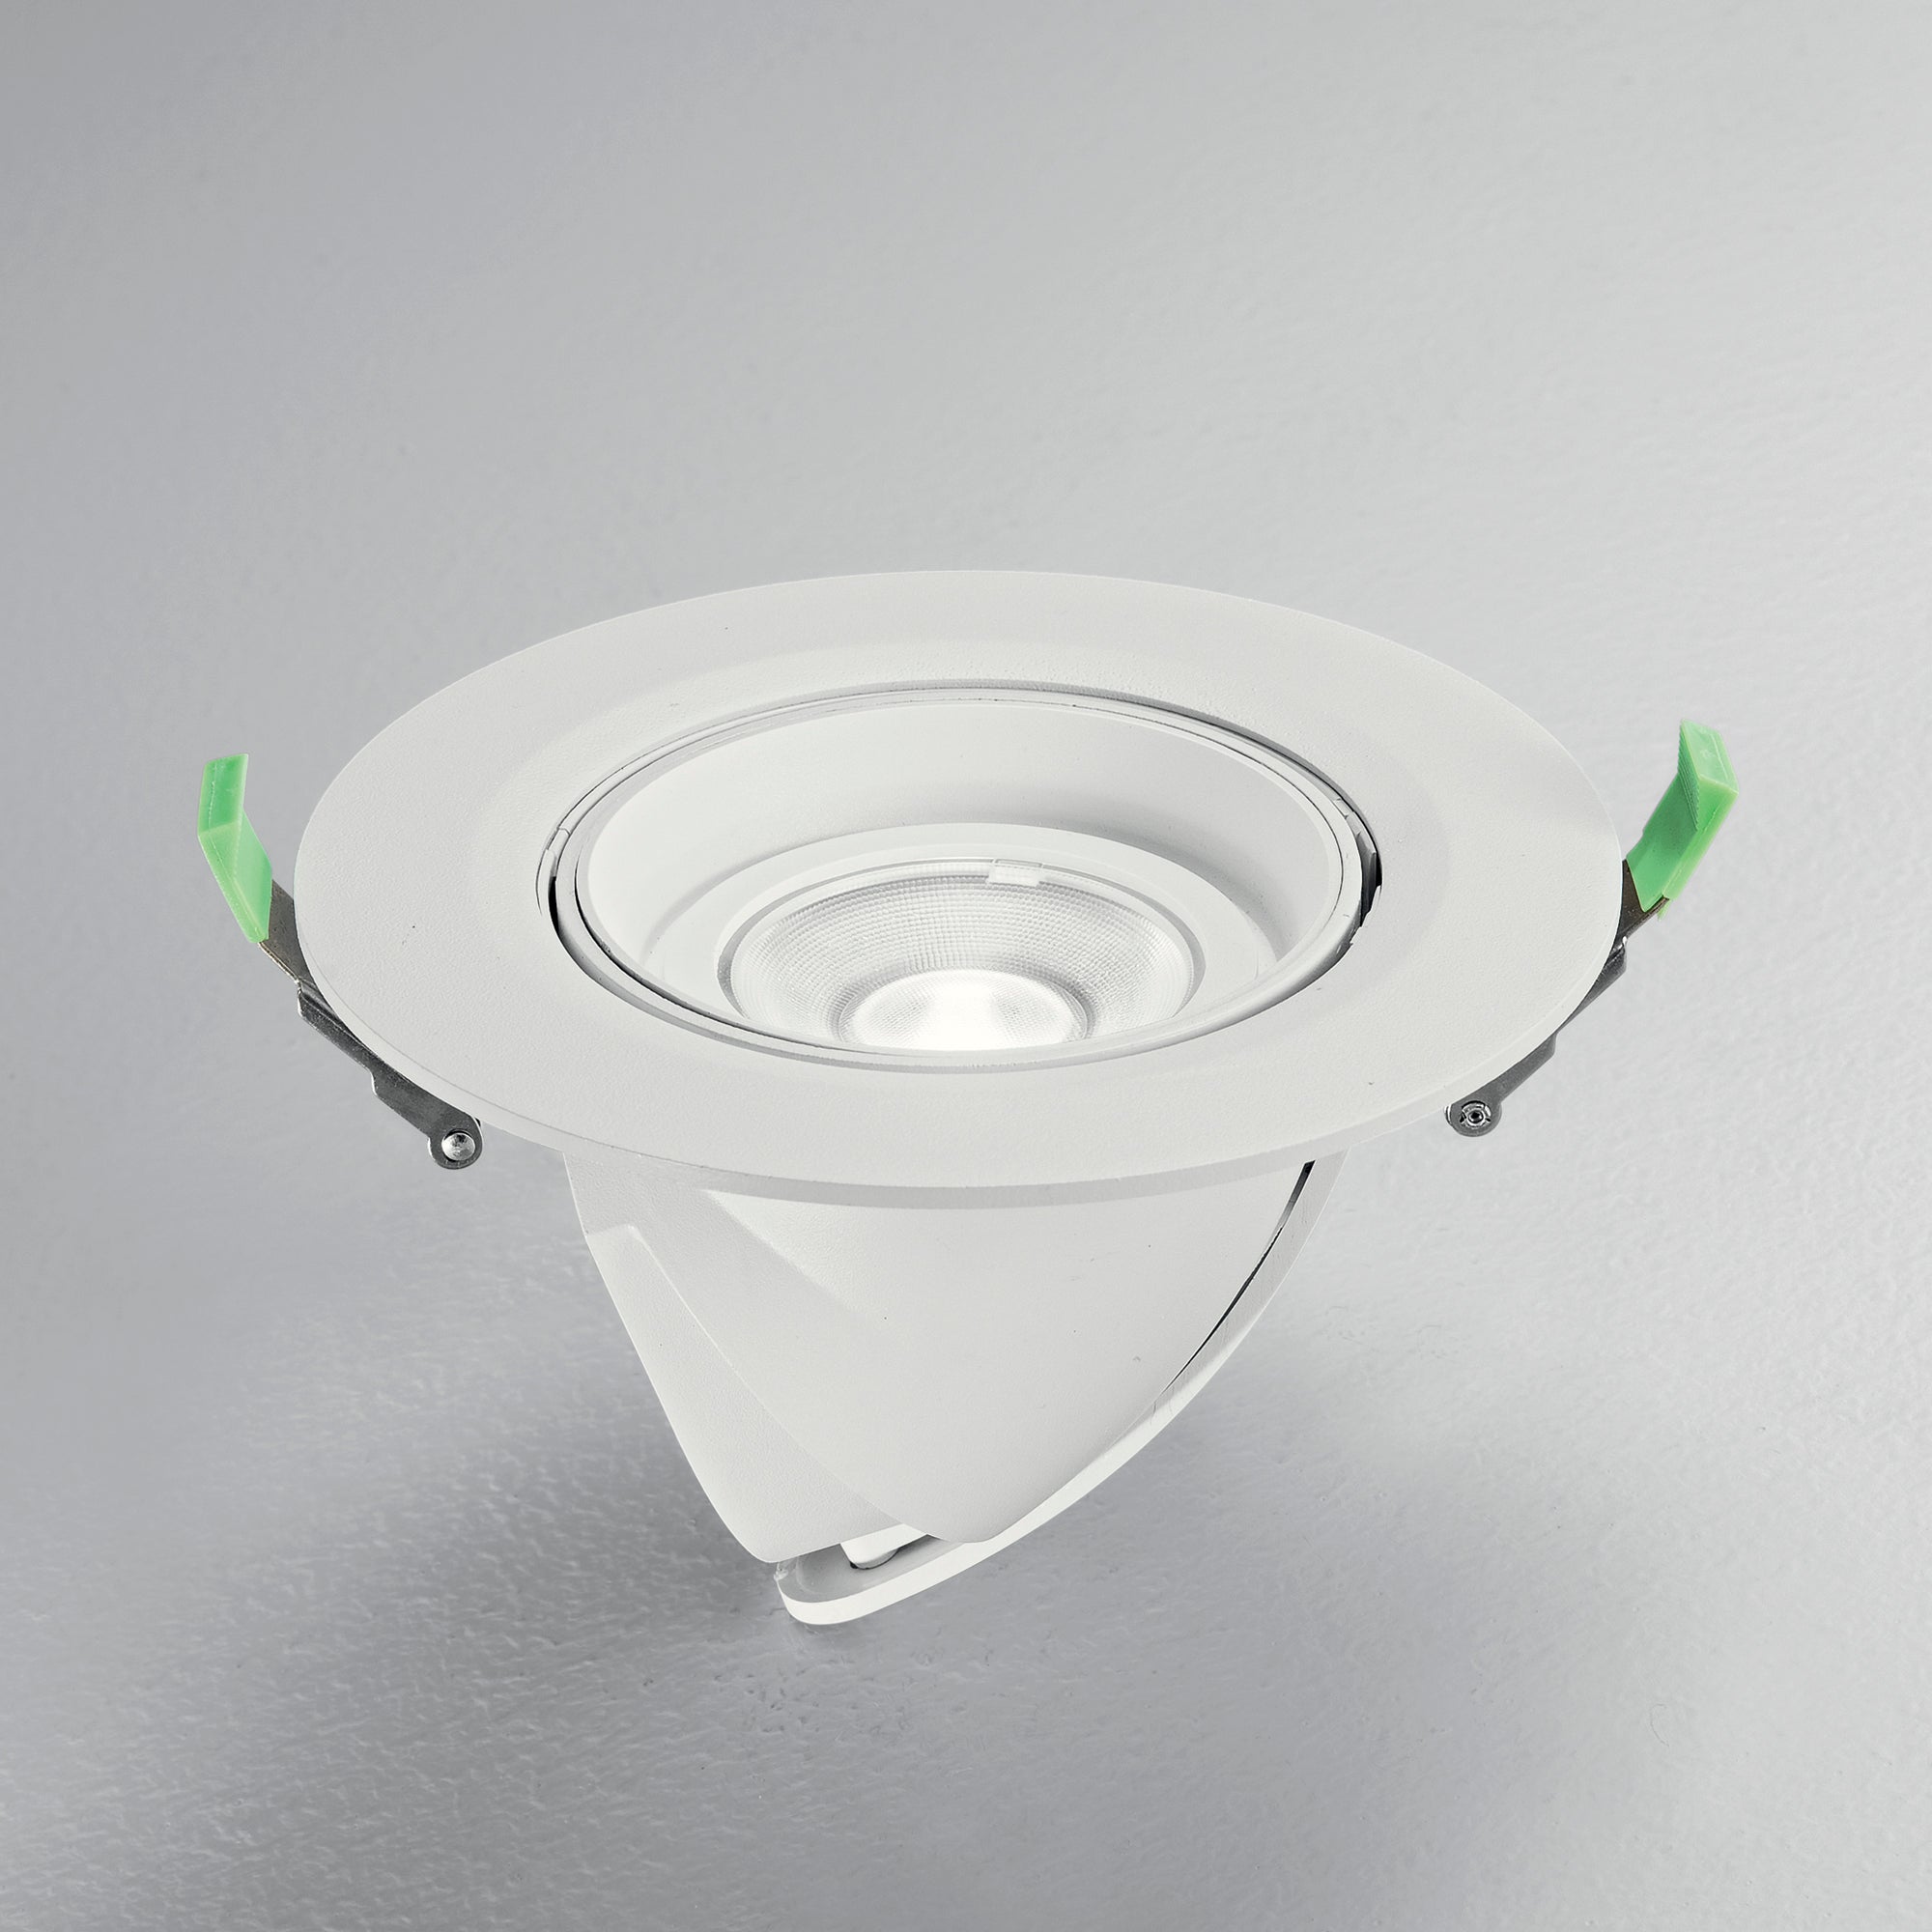 Downlight LED DELTA en aluminium, avec interrupteur CCT pour changer la température de couleur